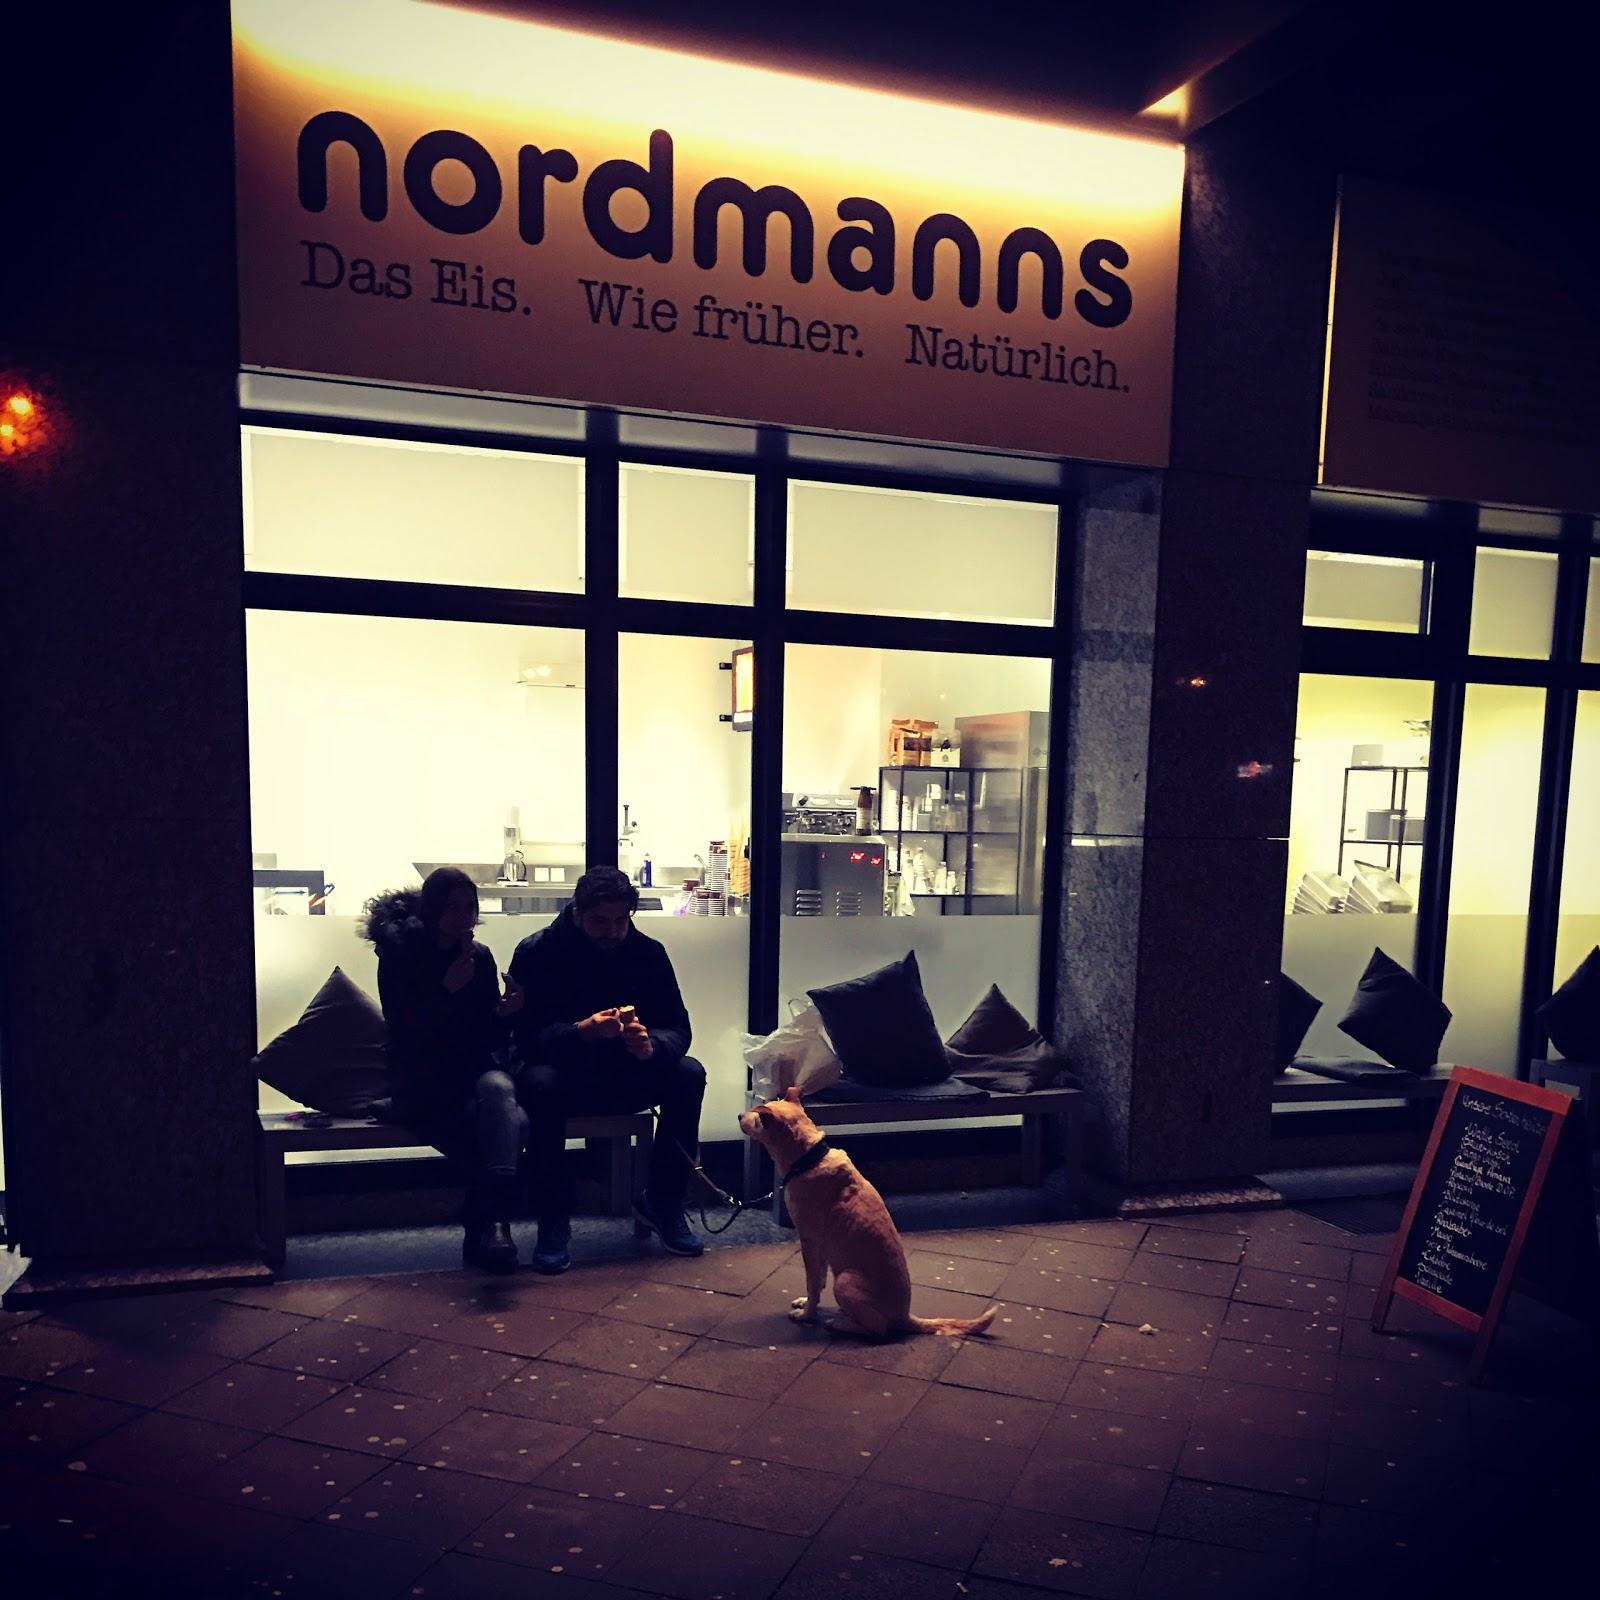 Restaurant "nordmanns. Das Eis." in Düsseldorf